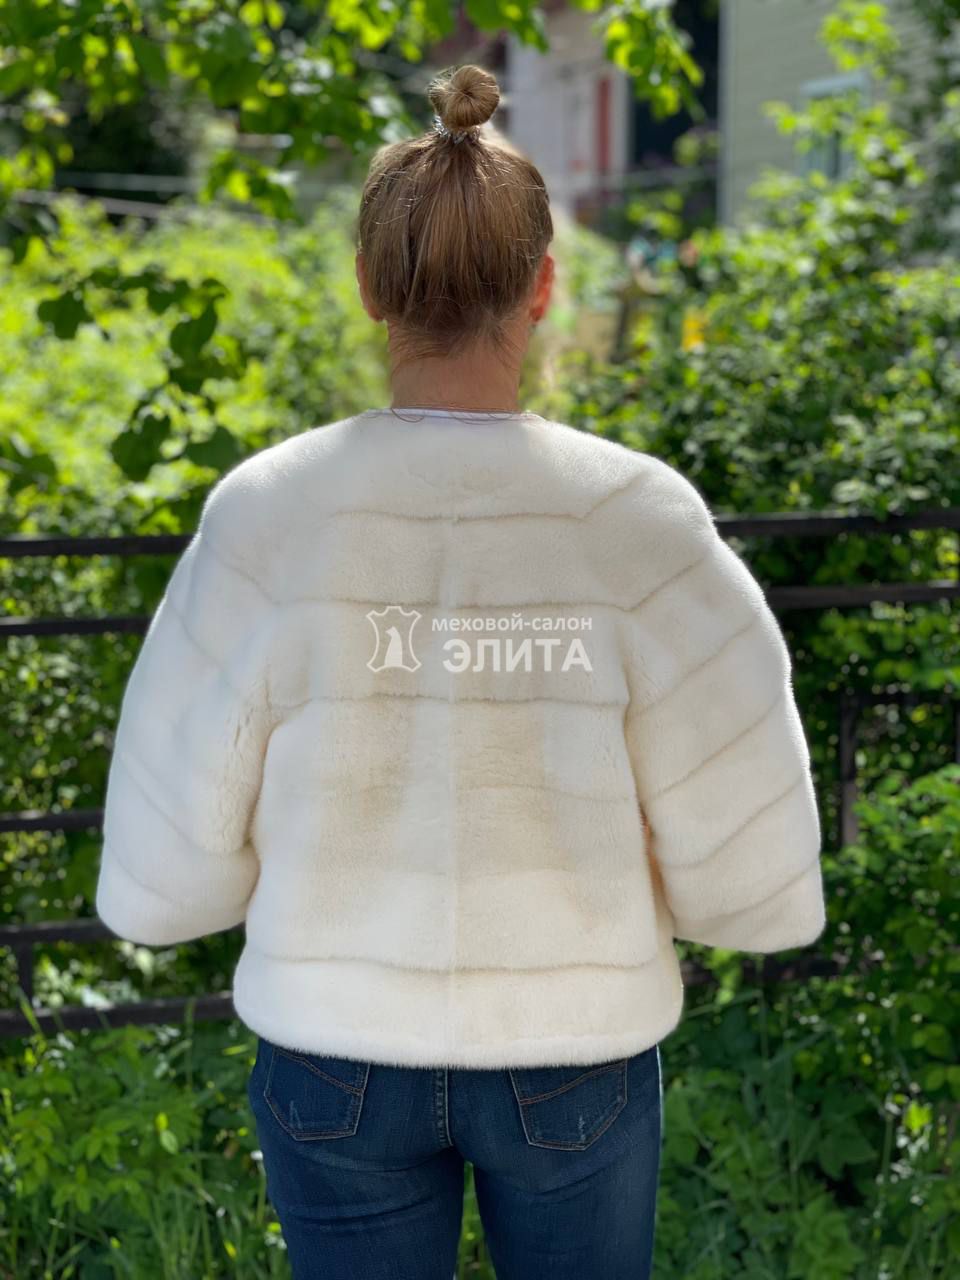 Куртка из норки S-1307, р-р 42-46, цена 74900 рублей в интернет-магазине кожи и меха ЭЛИТА. Вид 2